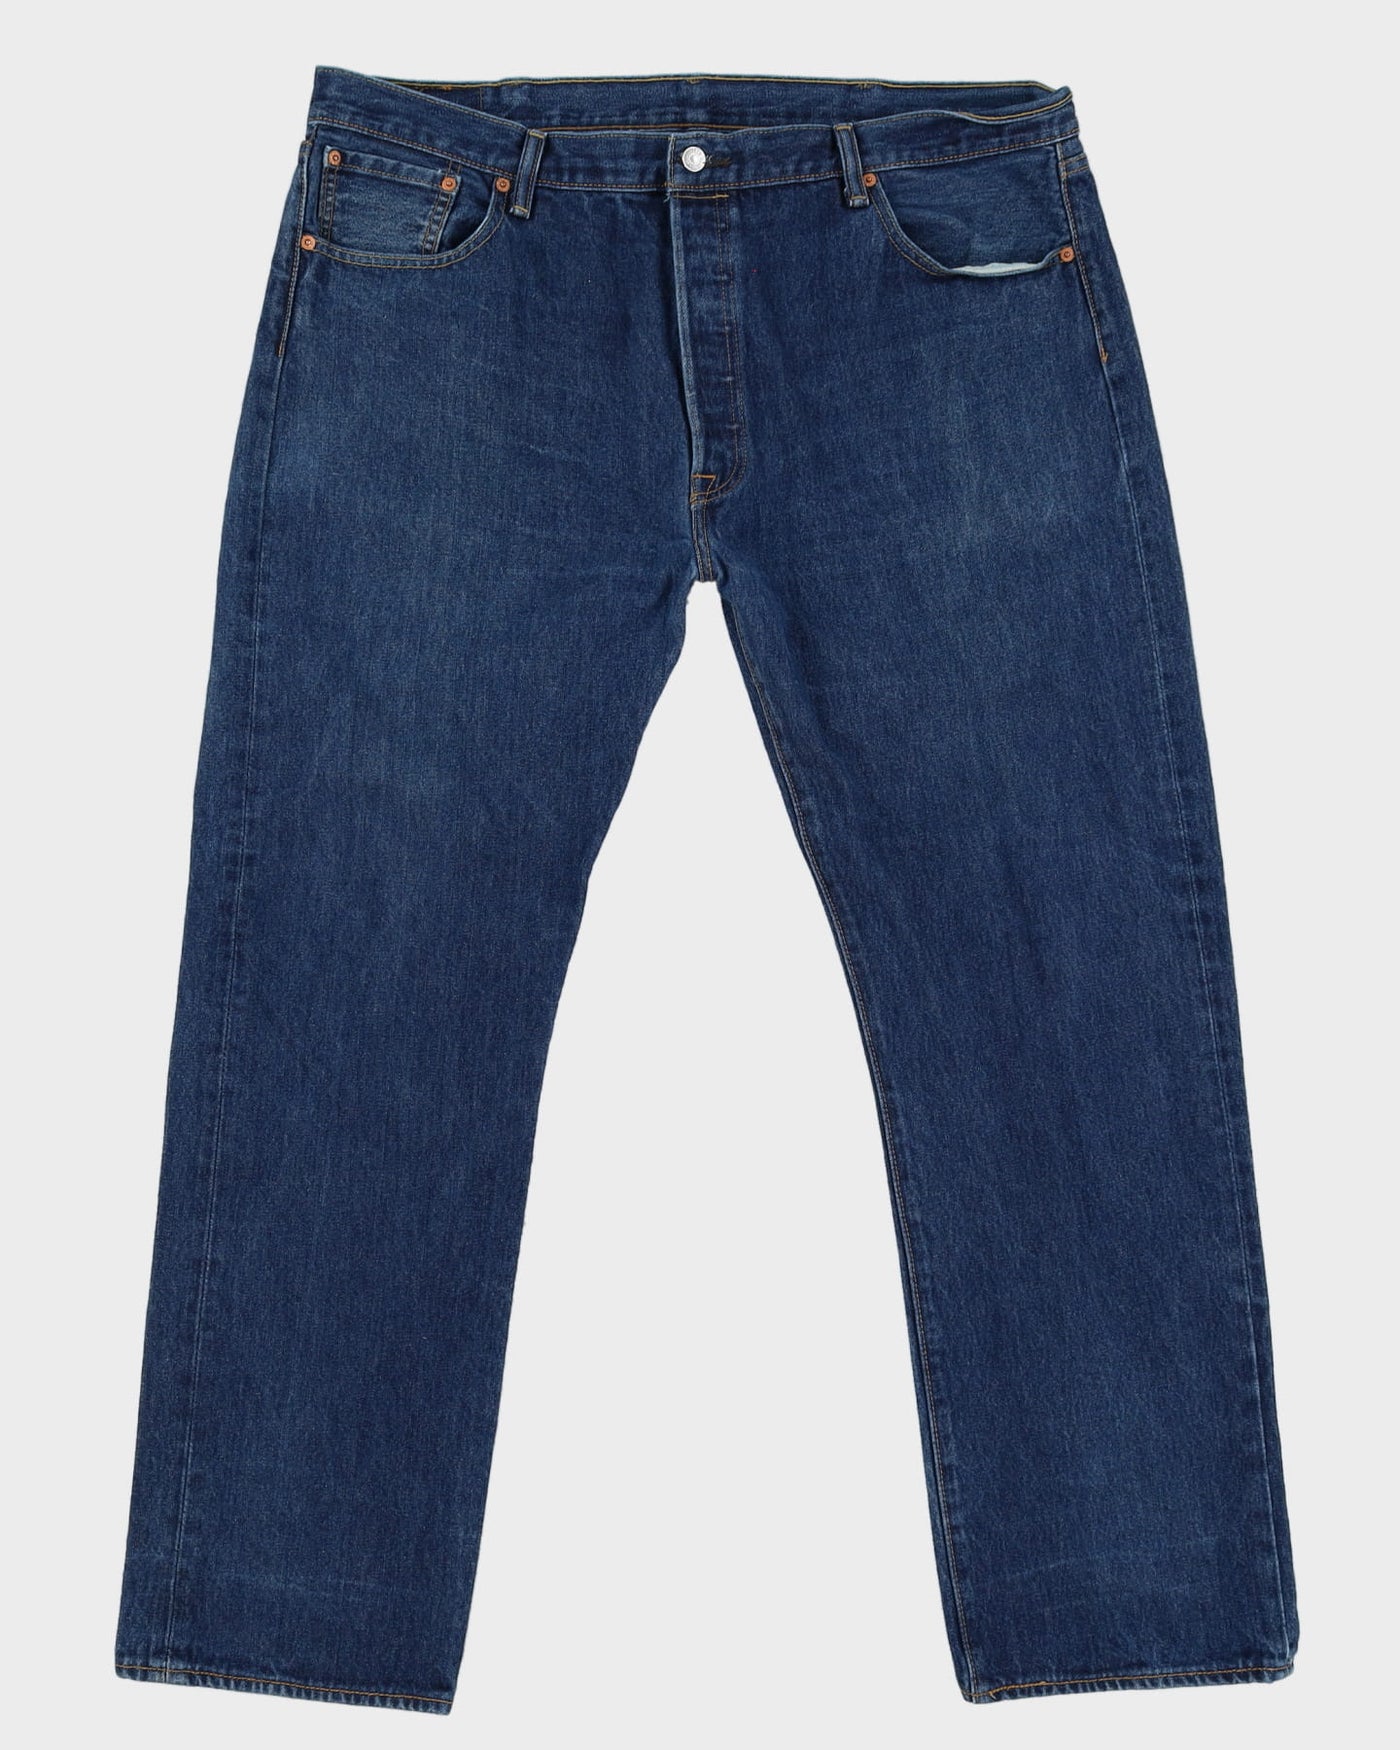 Levi's 501 Blue Dark Wash Jeans - W42 L32